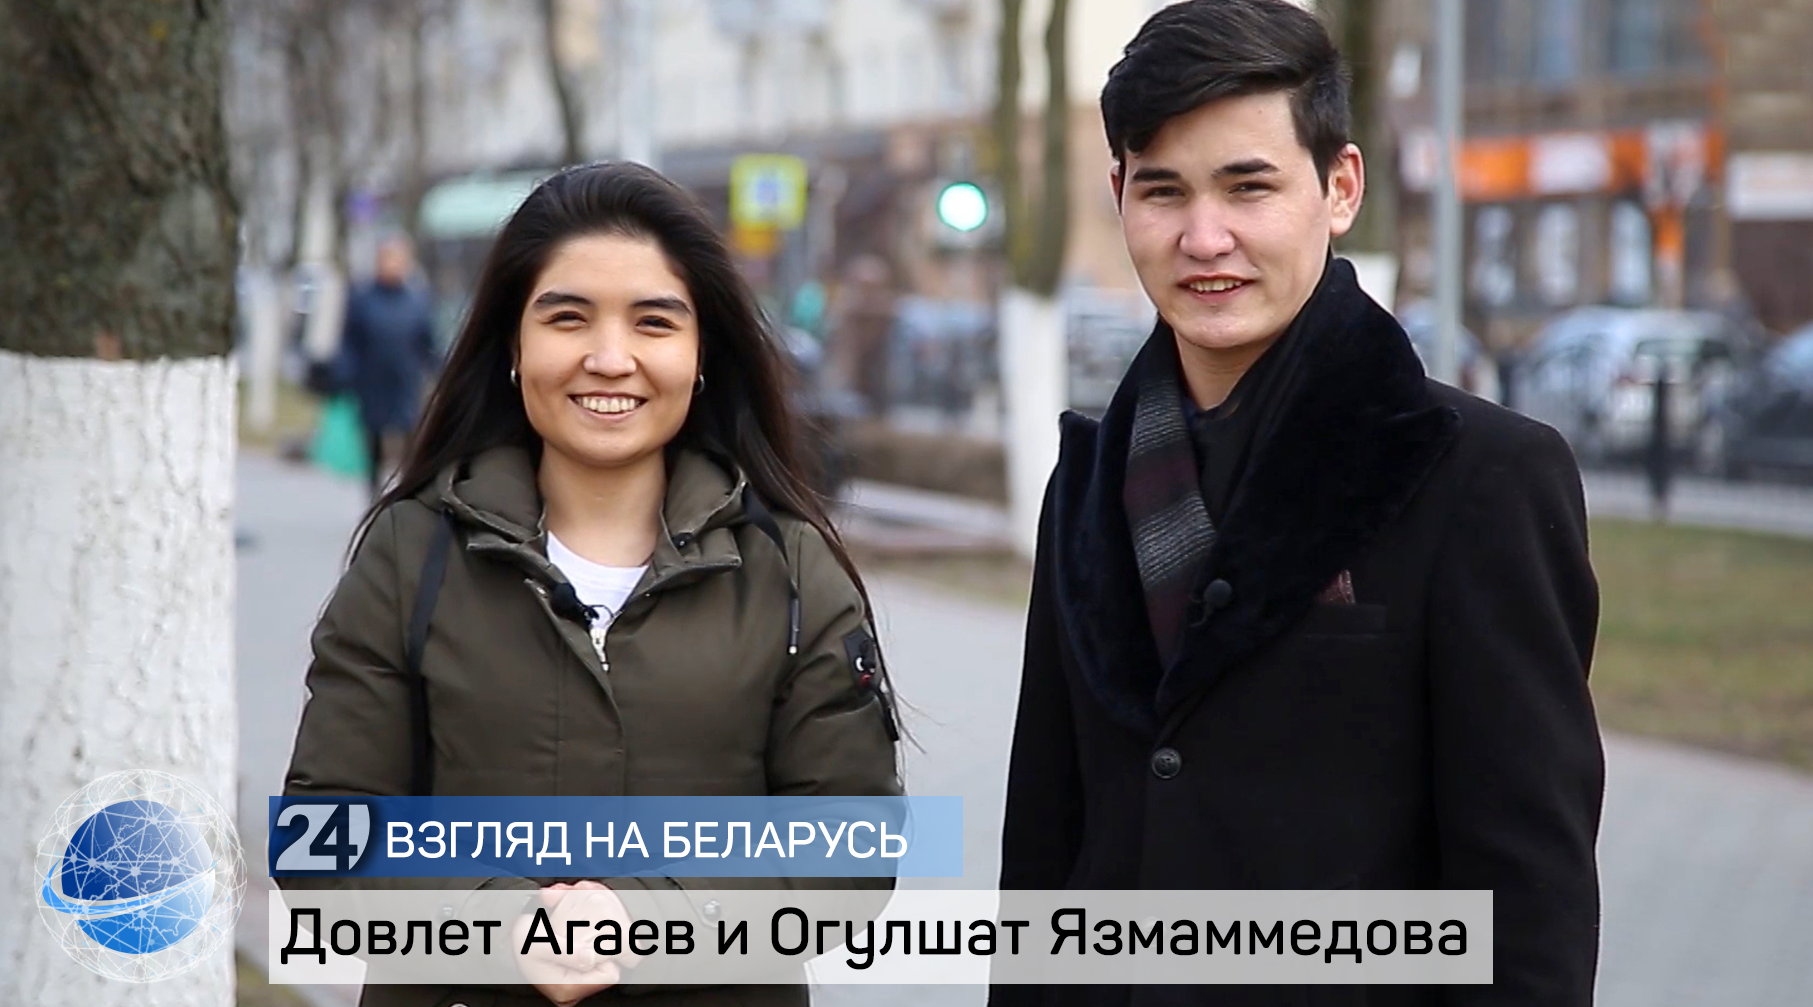 Студенты из Туркменистана рассказывают о Беларуси, студенческой жизни, драниках и танцах